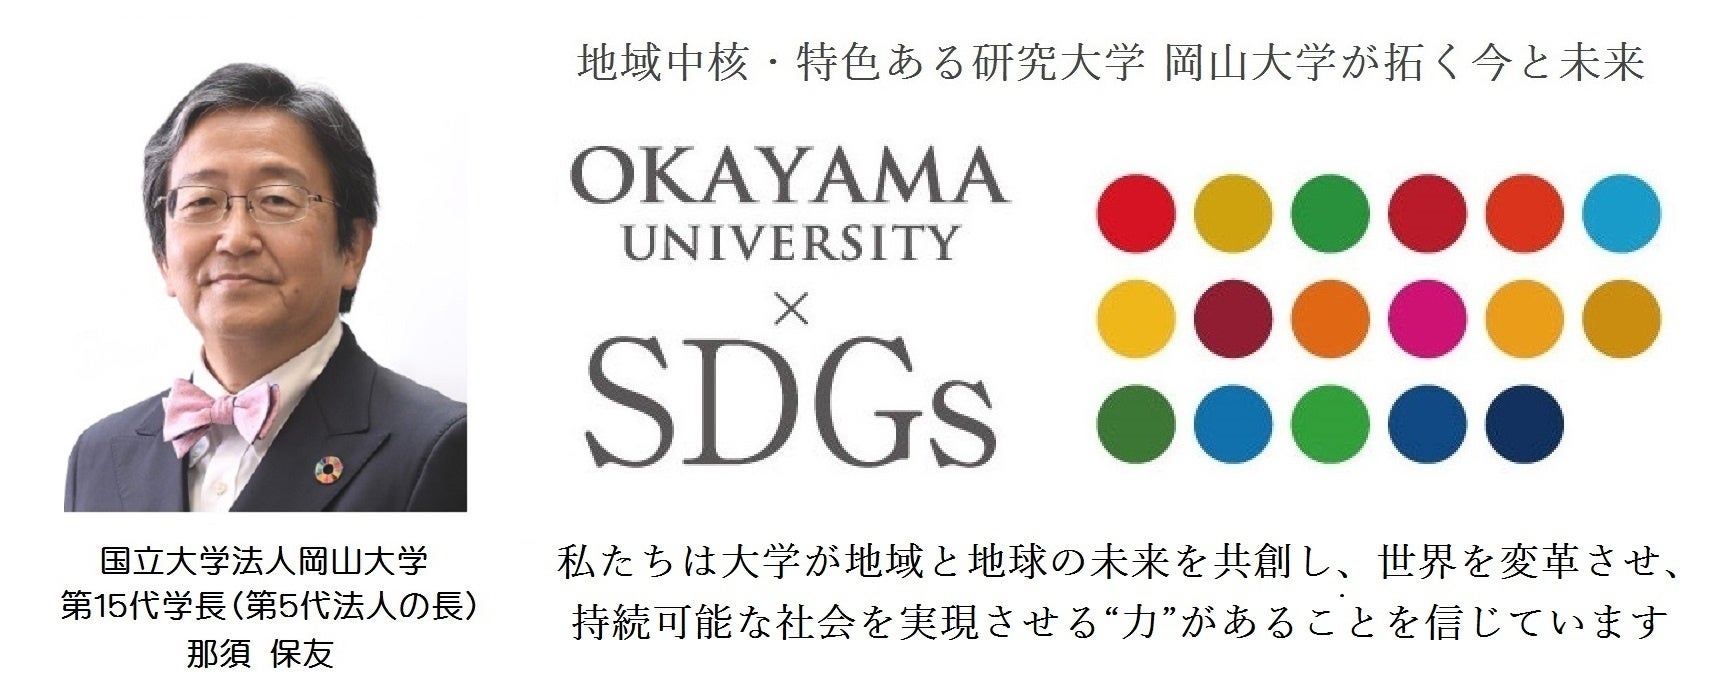 【岡山大学】令和6年能登半島地震の被災地へ岡山大学病院DMATを派遣